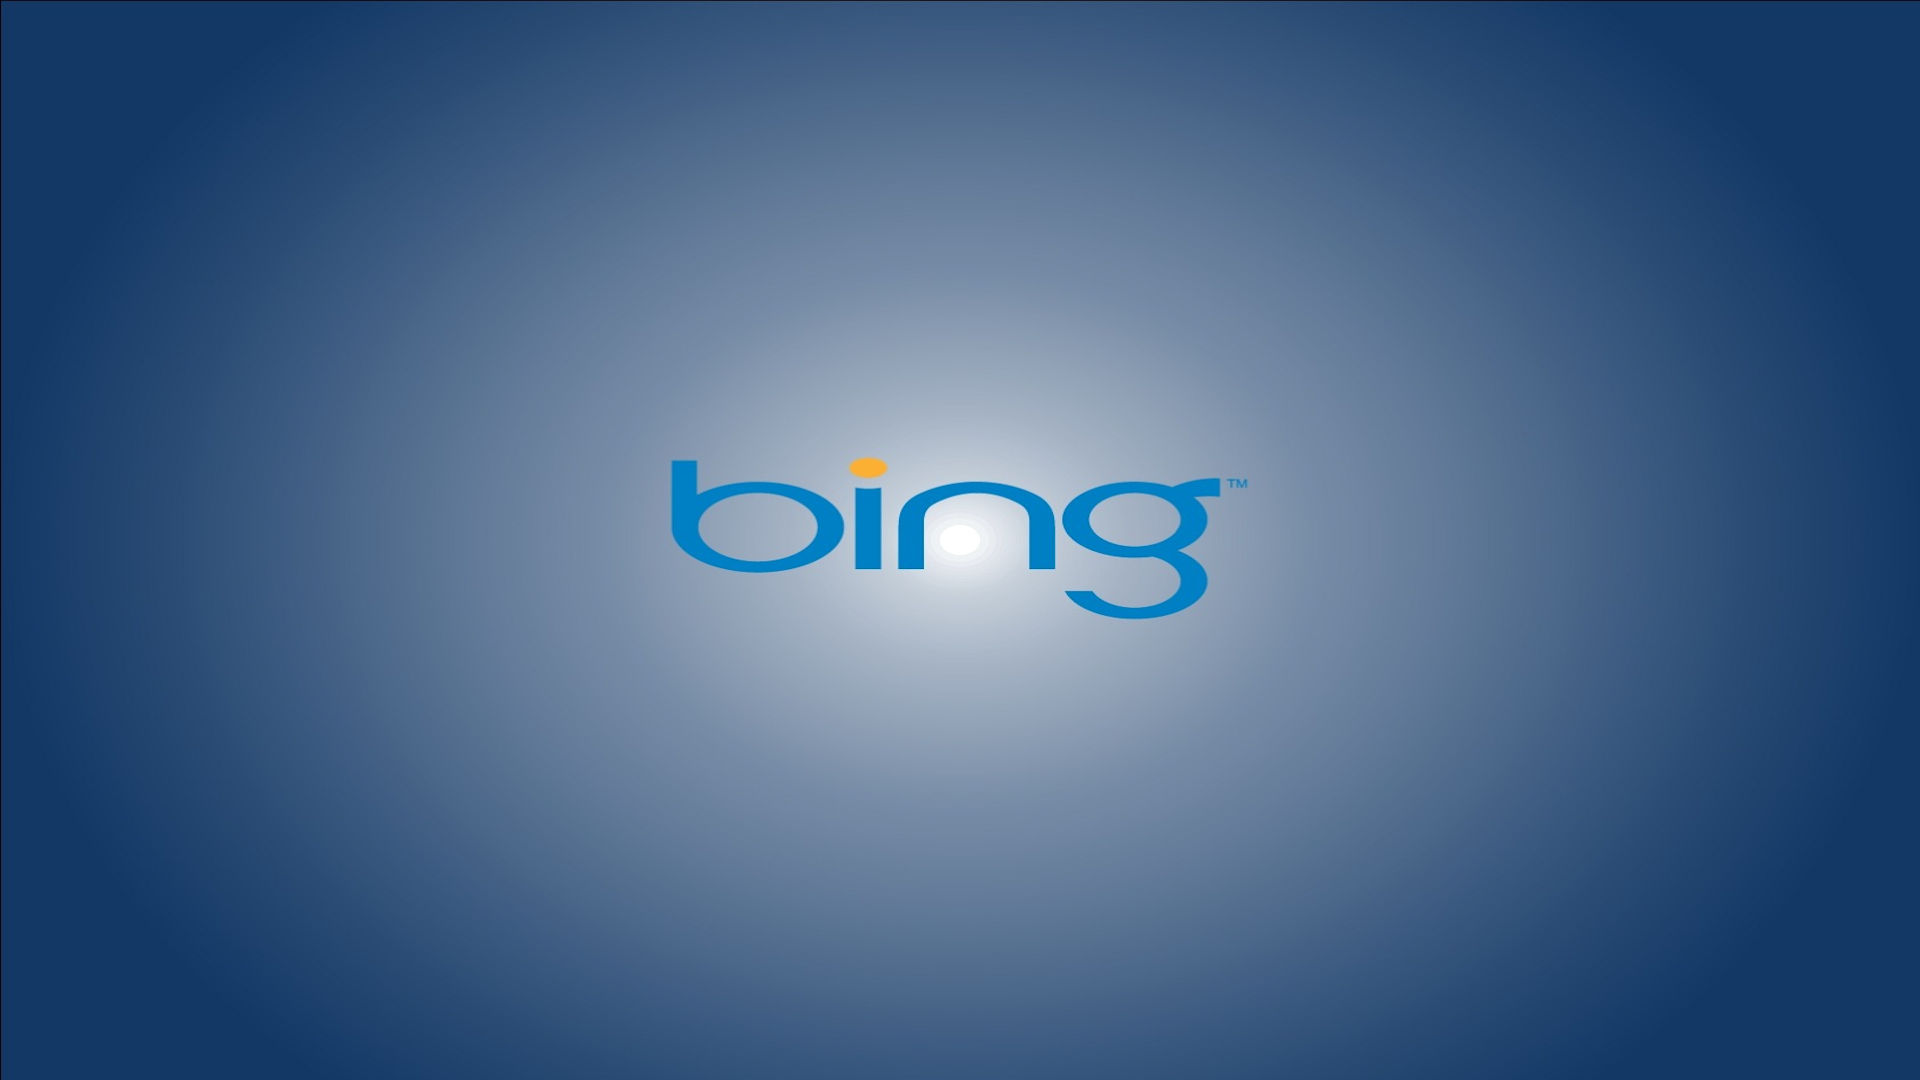 Www bing com image. Майкрософт бинг. Bing Поисковик. Интернет-Поисковая система бинг.